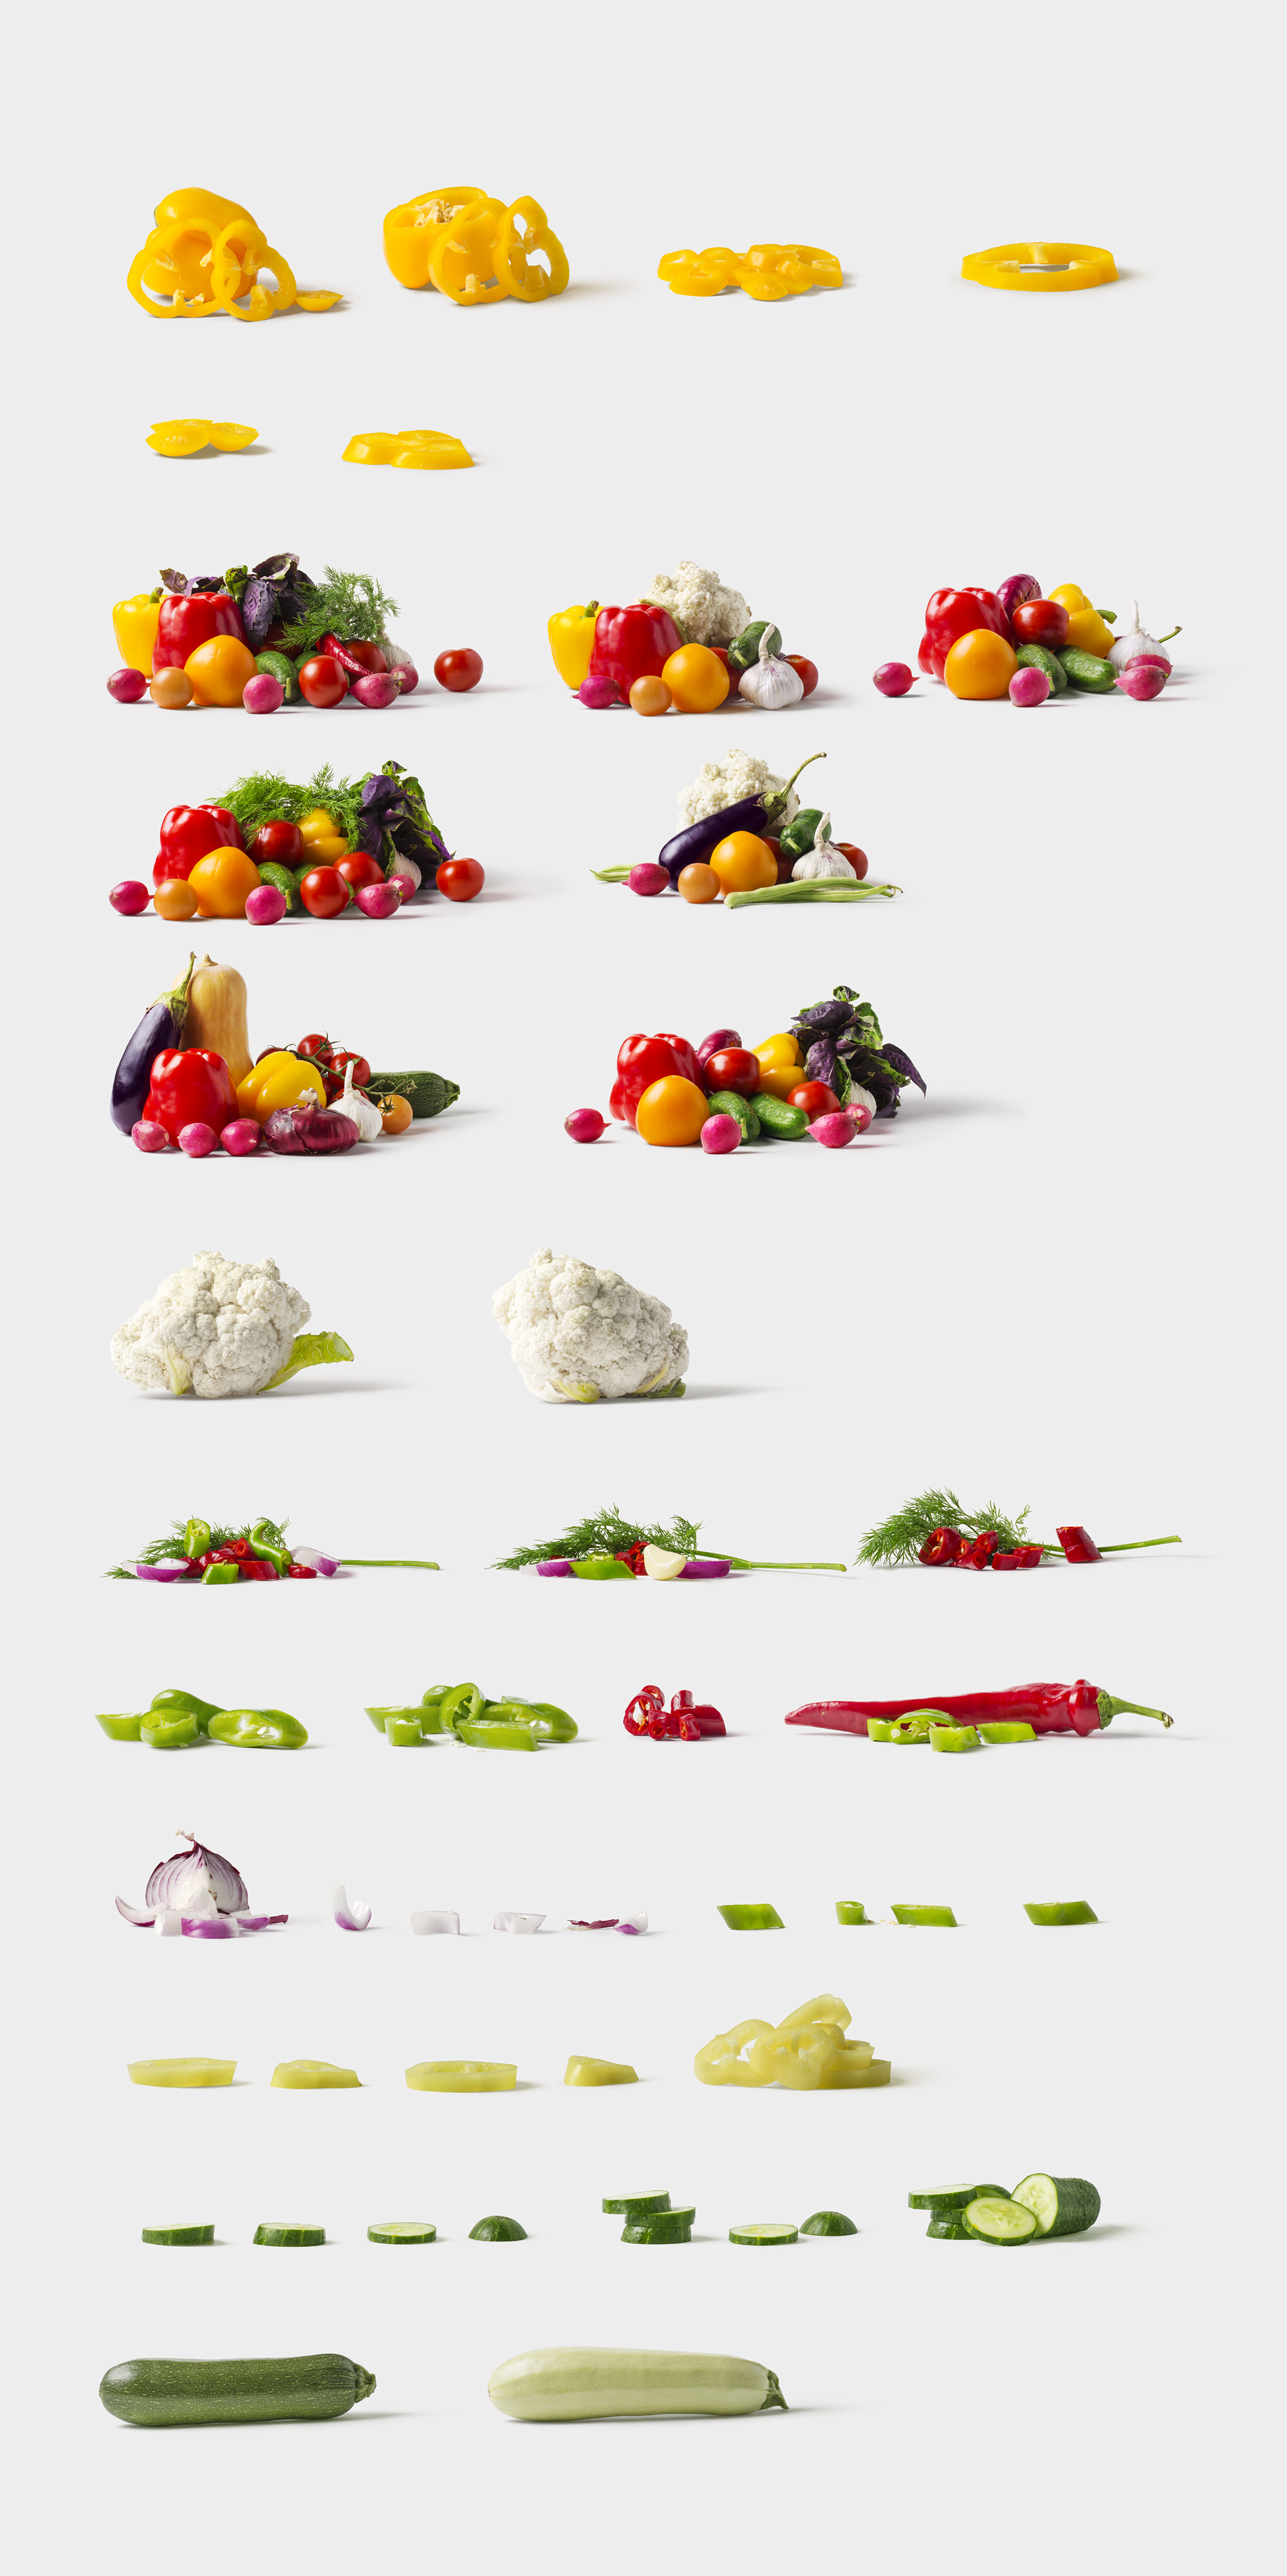 海量蔬菜水果高清实物照片样机素材Fruits and Vegetables插图(2)